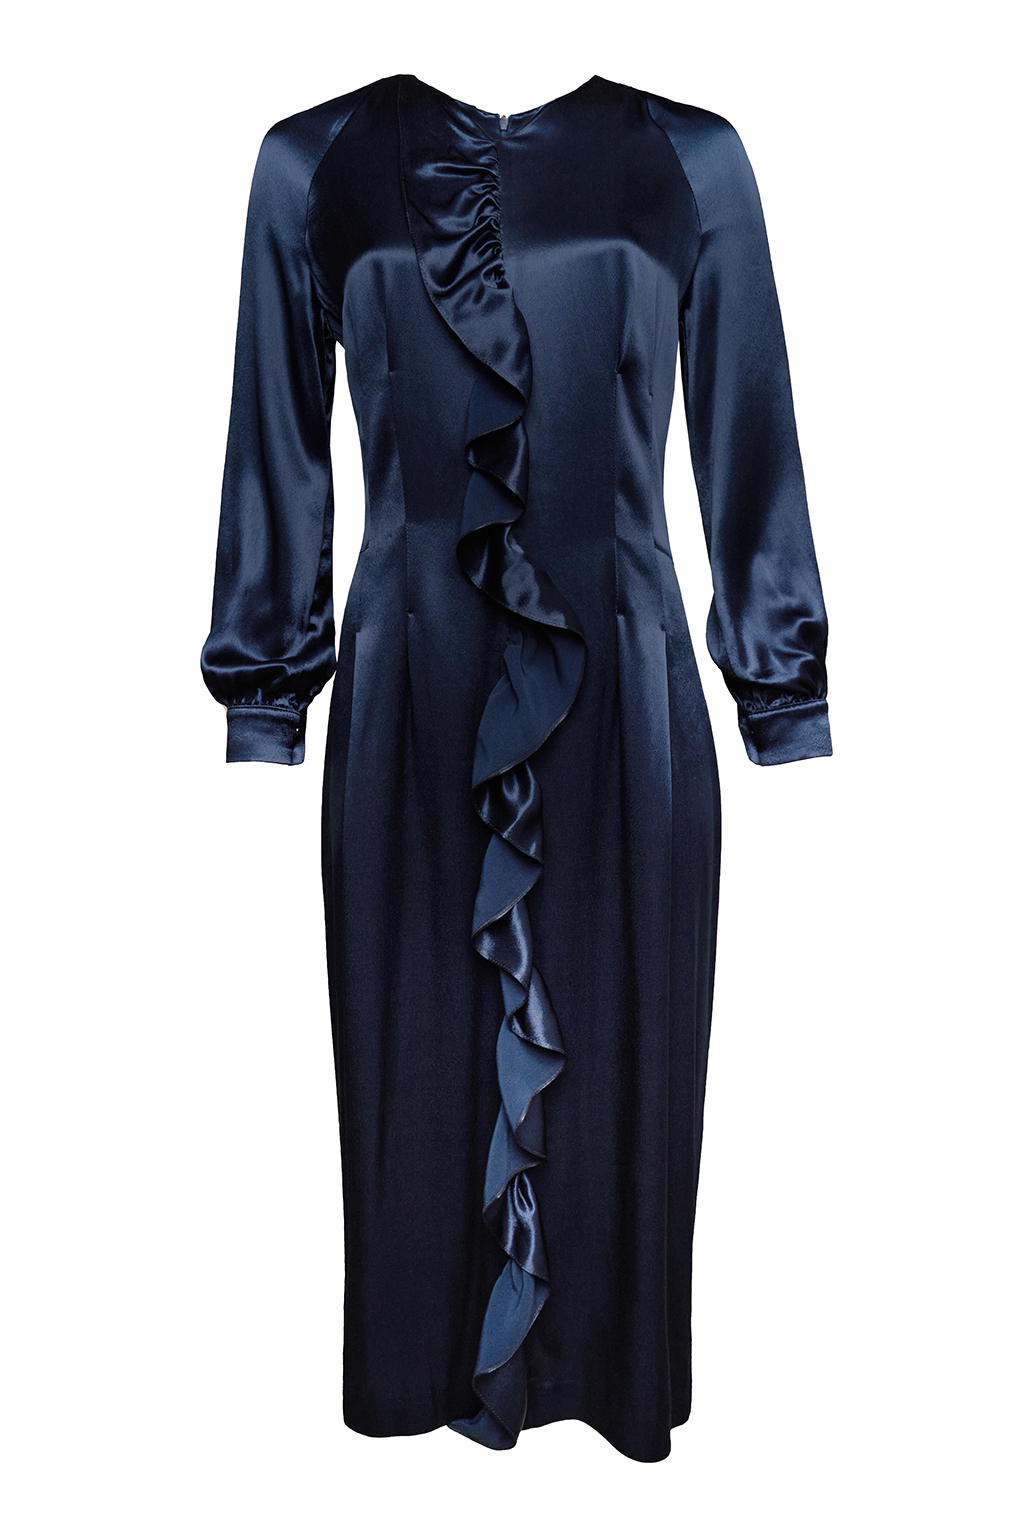 фото Платье женское paola ray pr120-3068 синее xl